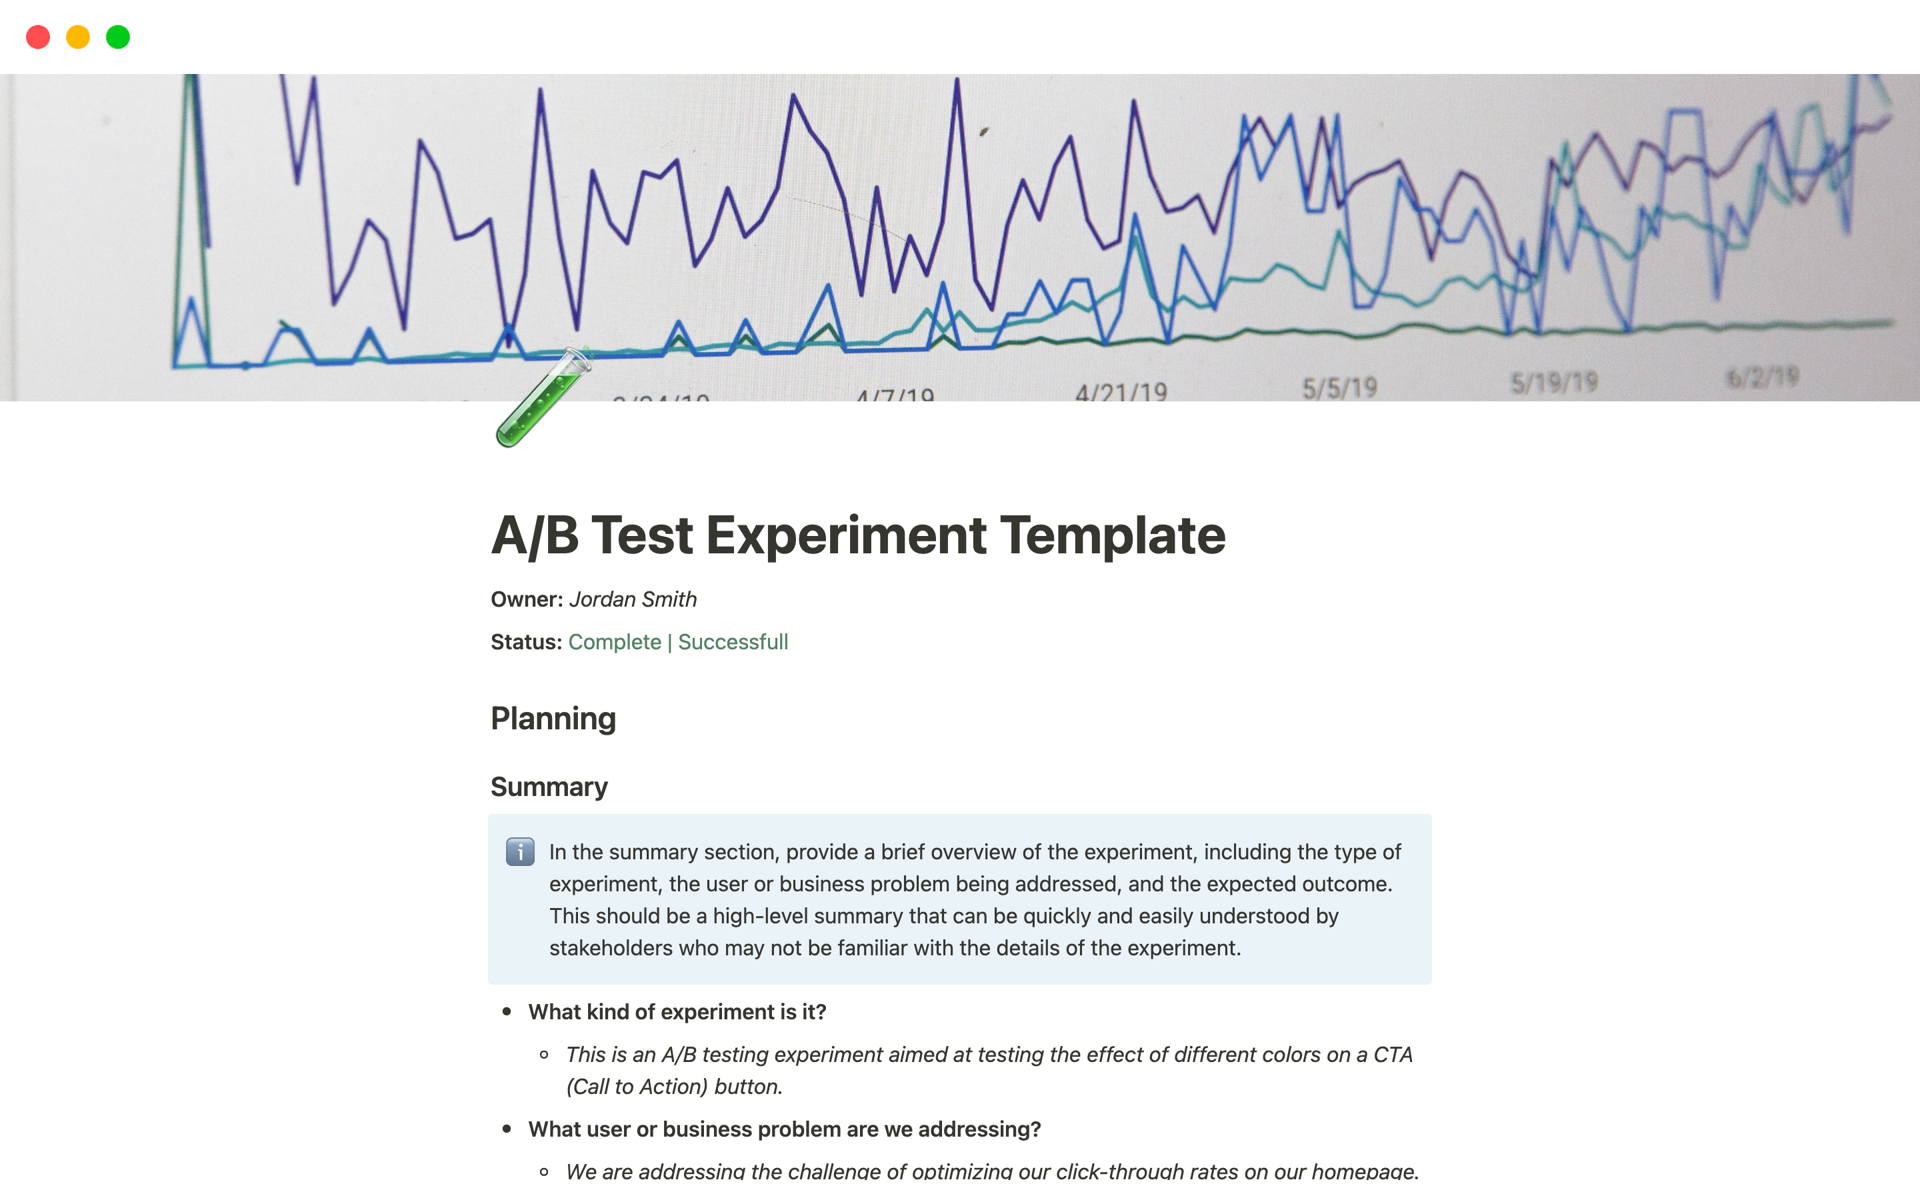 Uma prévia do modelo para A/B Test Experiment Template